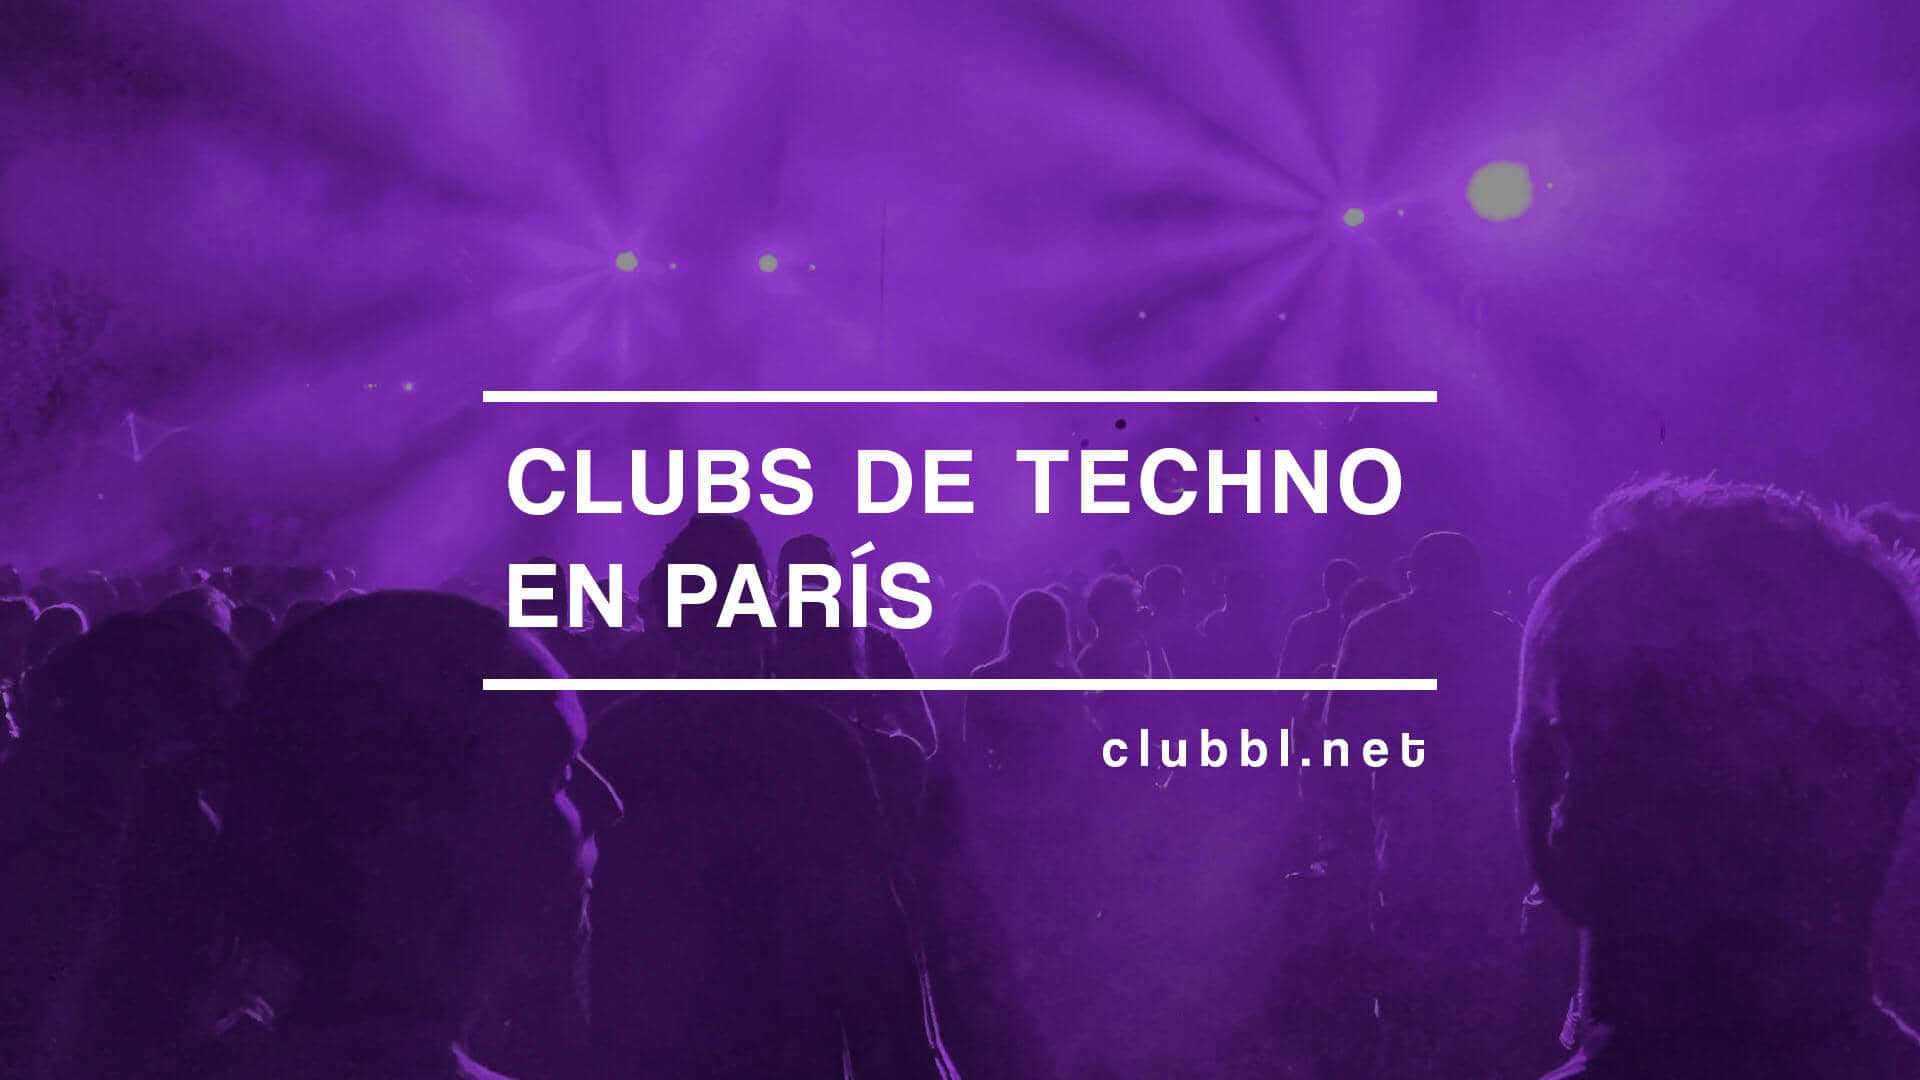 Clubs de techno en París que debes conocer, descubre diferentes clubs para disfrutar de tu música preferida en la ciudad